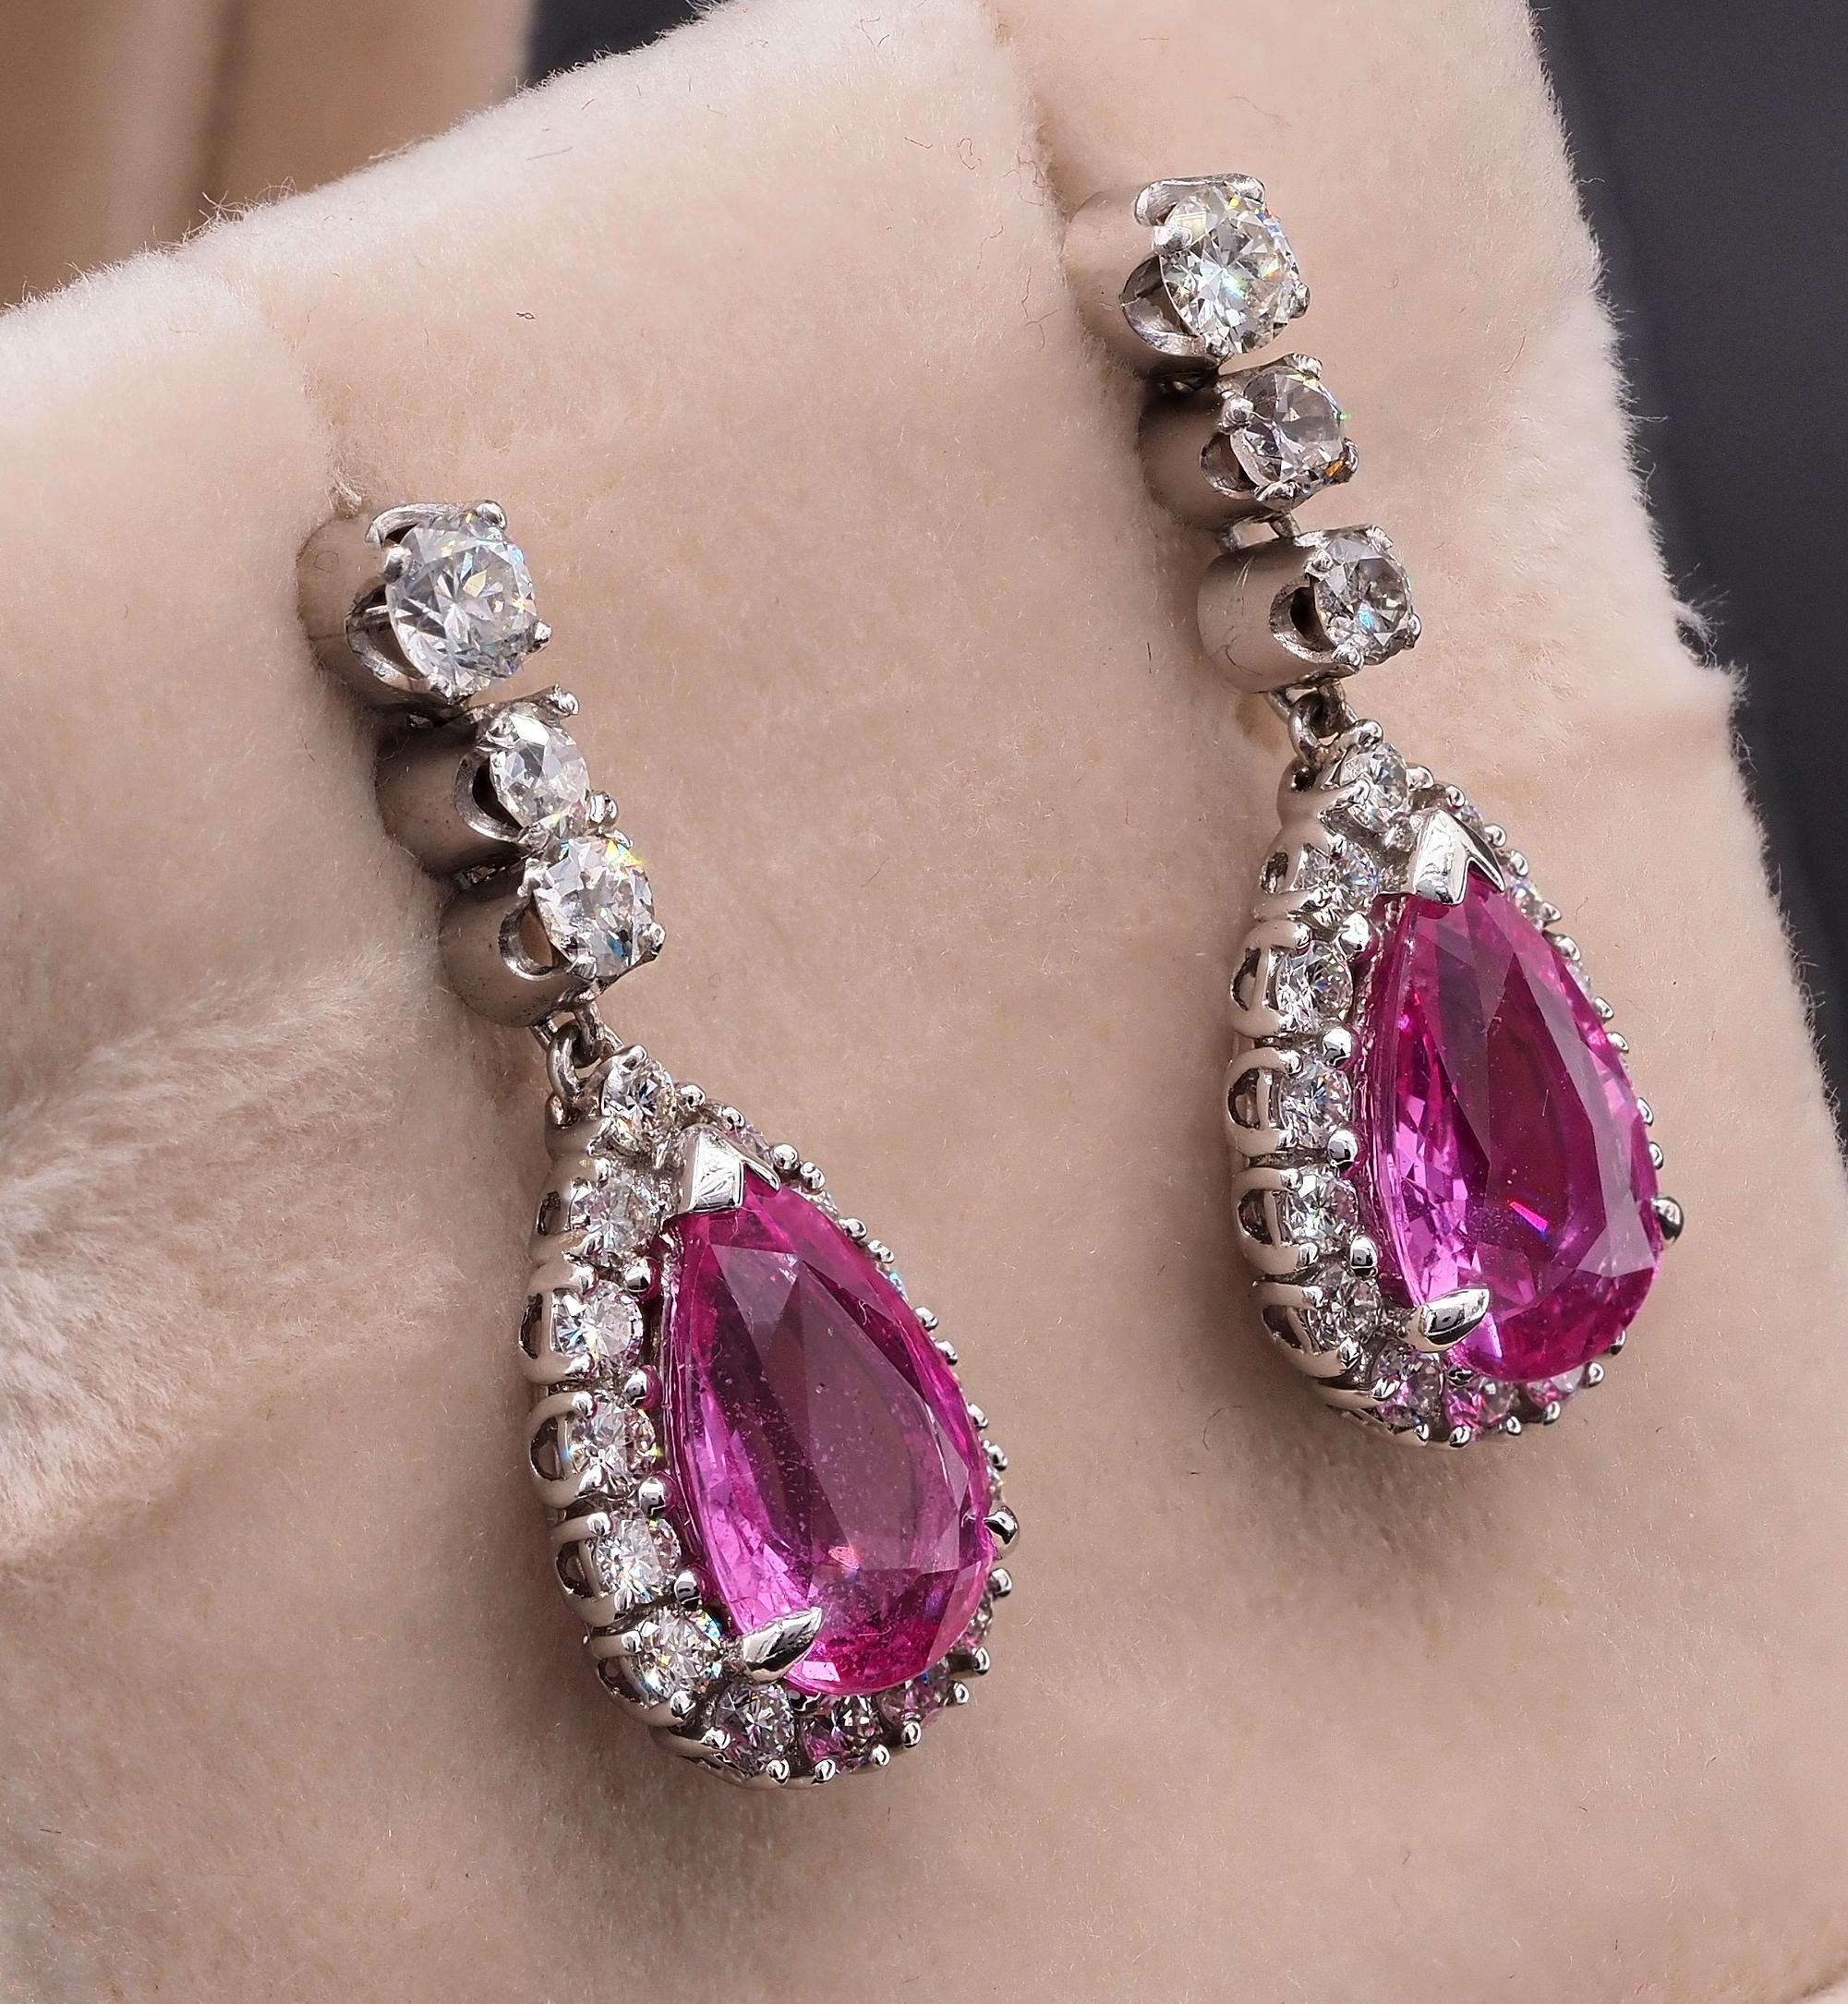 Wirklich schöne, funkelnde rosa Farbe kombiniert mit schimmernden Diamanten edle Tropfen Ohrringe späten Art Deco Zeitraum, 1930/35 ca, traditionelles Design für immer in Ehren gehalten werden.
Geschmackvolles Tropfenlinien-Design, handgefertigt aus